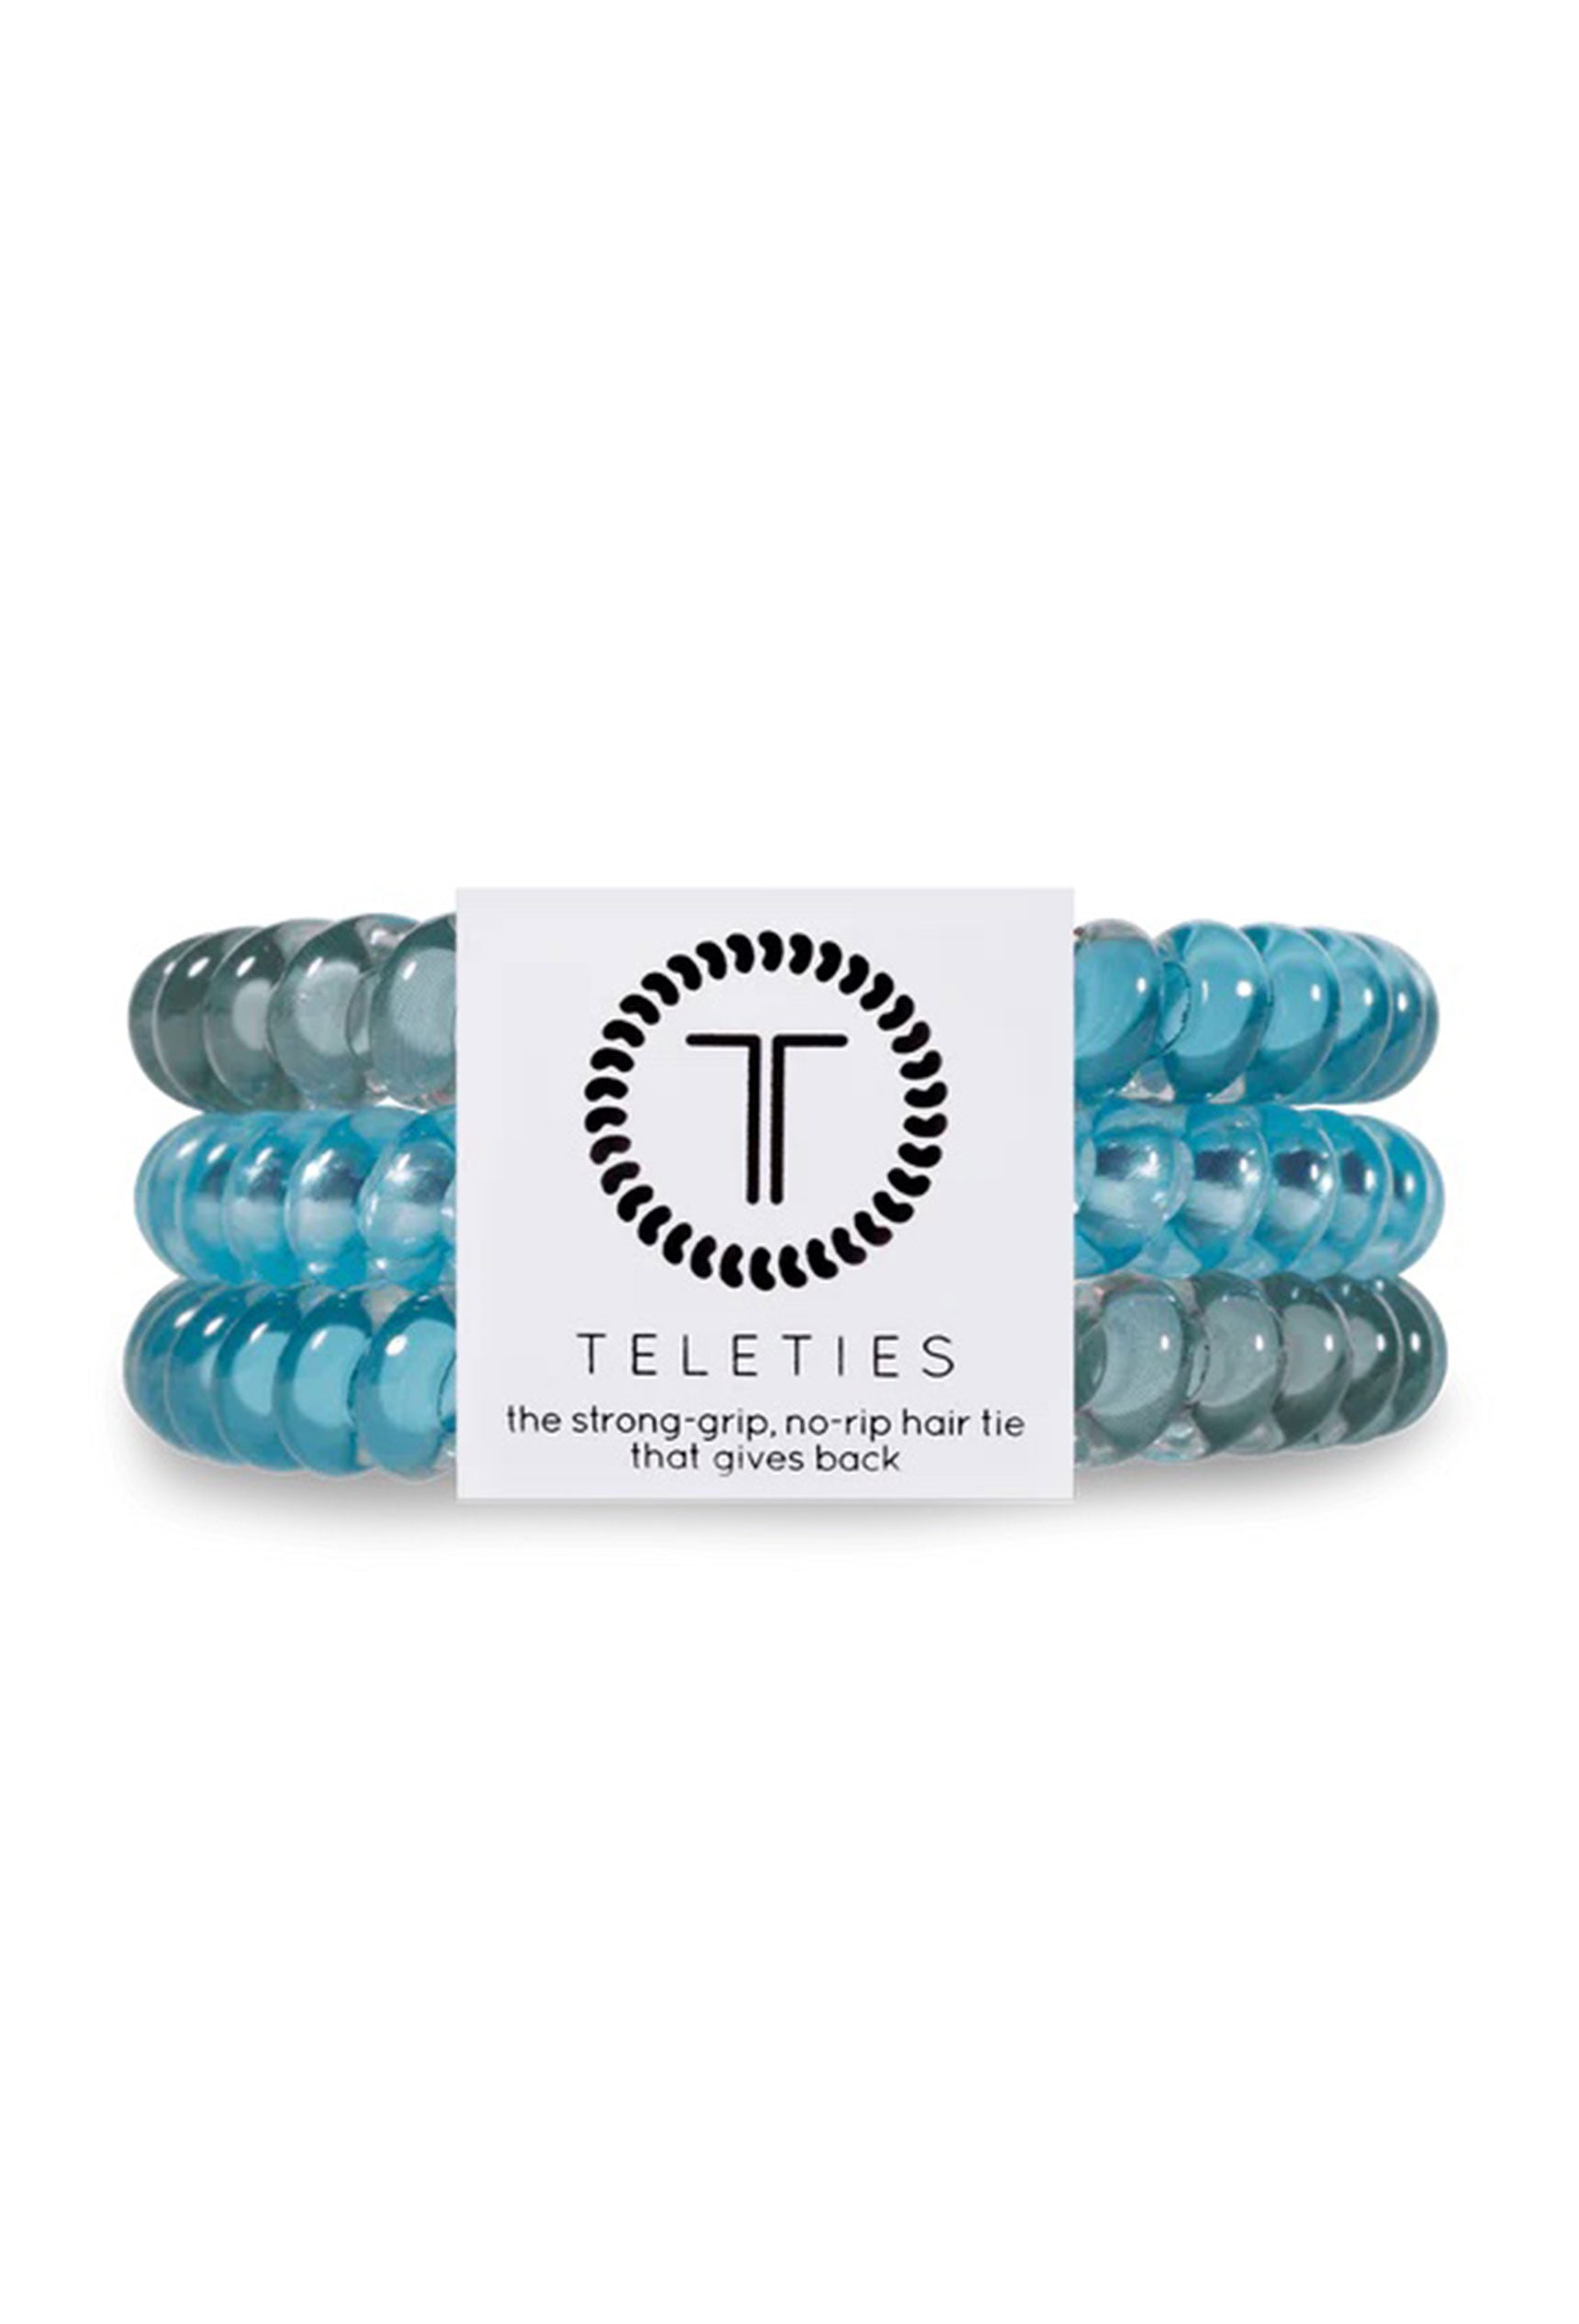 TELETIES Small Hair Ties - Ocean Breeze, set of 3 hair coils, blue